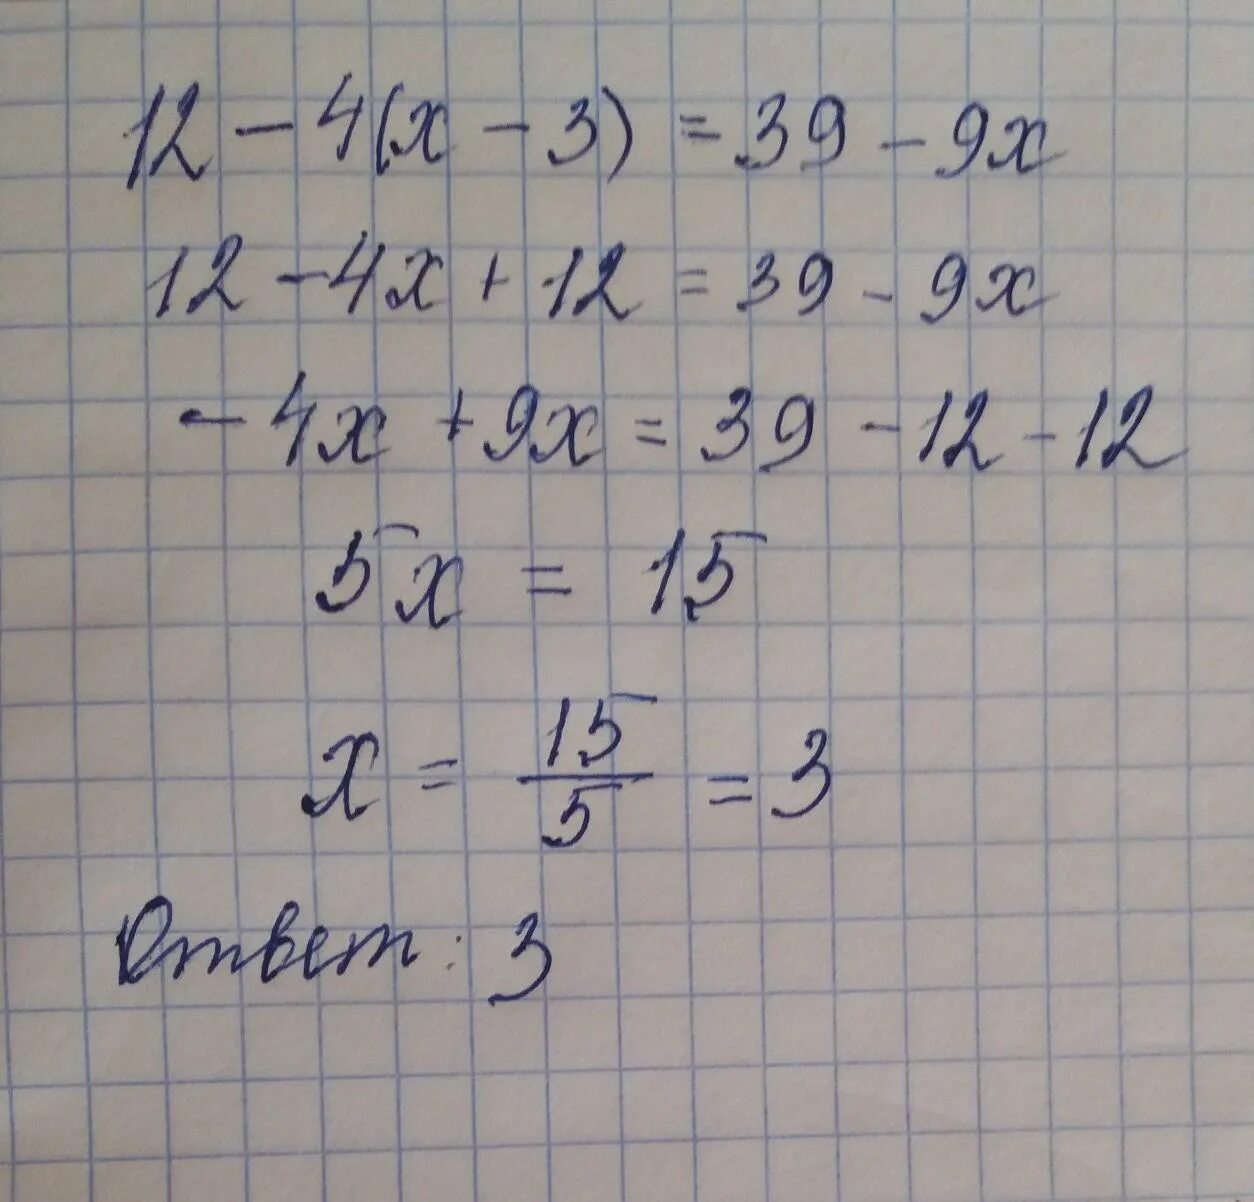 12-4(Х-3)=39-9х. 5х 3 12 решение. 3х 4у 12 решение. 4х+12=-4 решение. 3 4x 12 решение